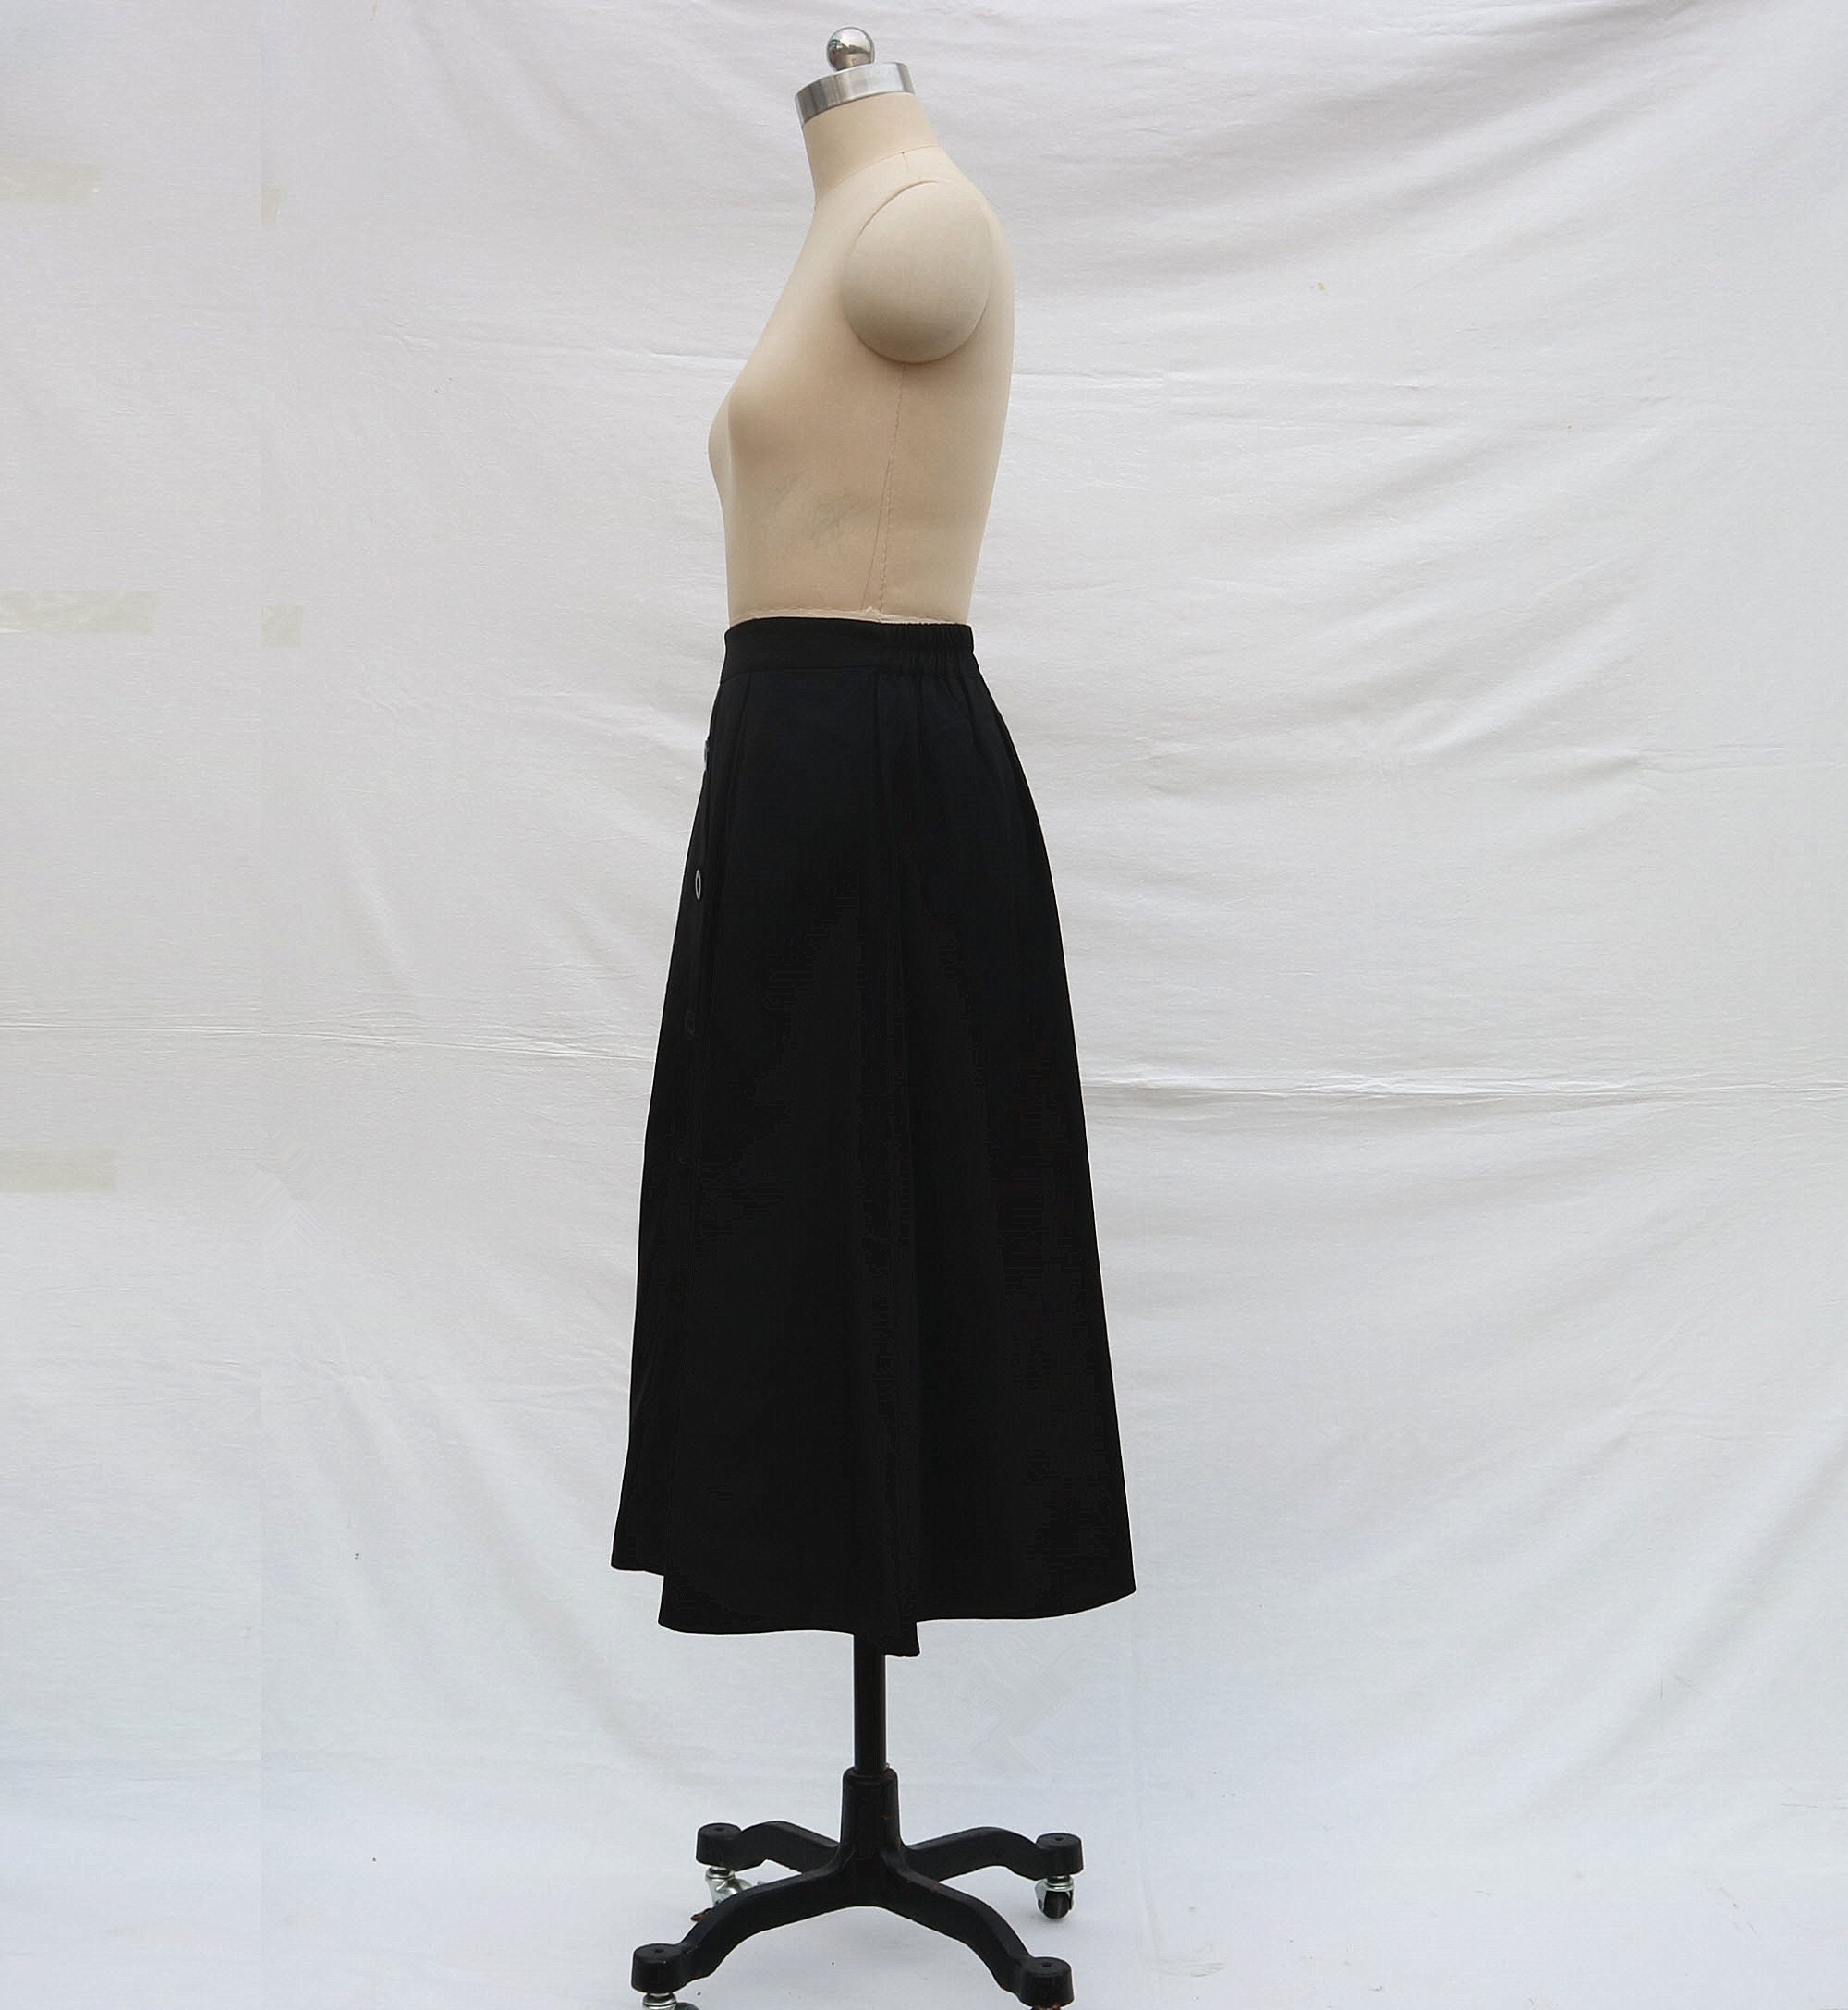 Black Midi Skirt Linen Long Skirt Women's Skirt More Size - Etsy